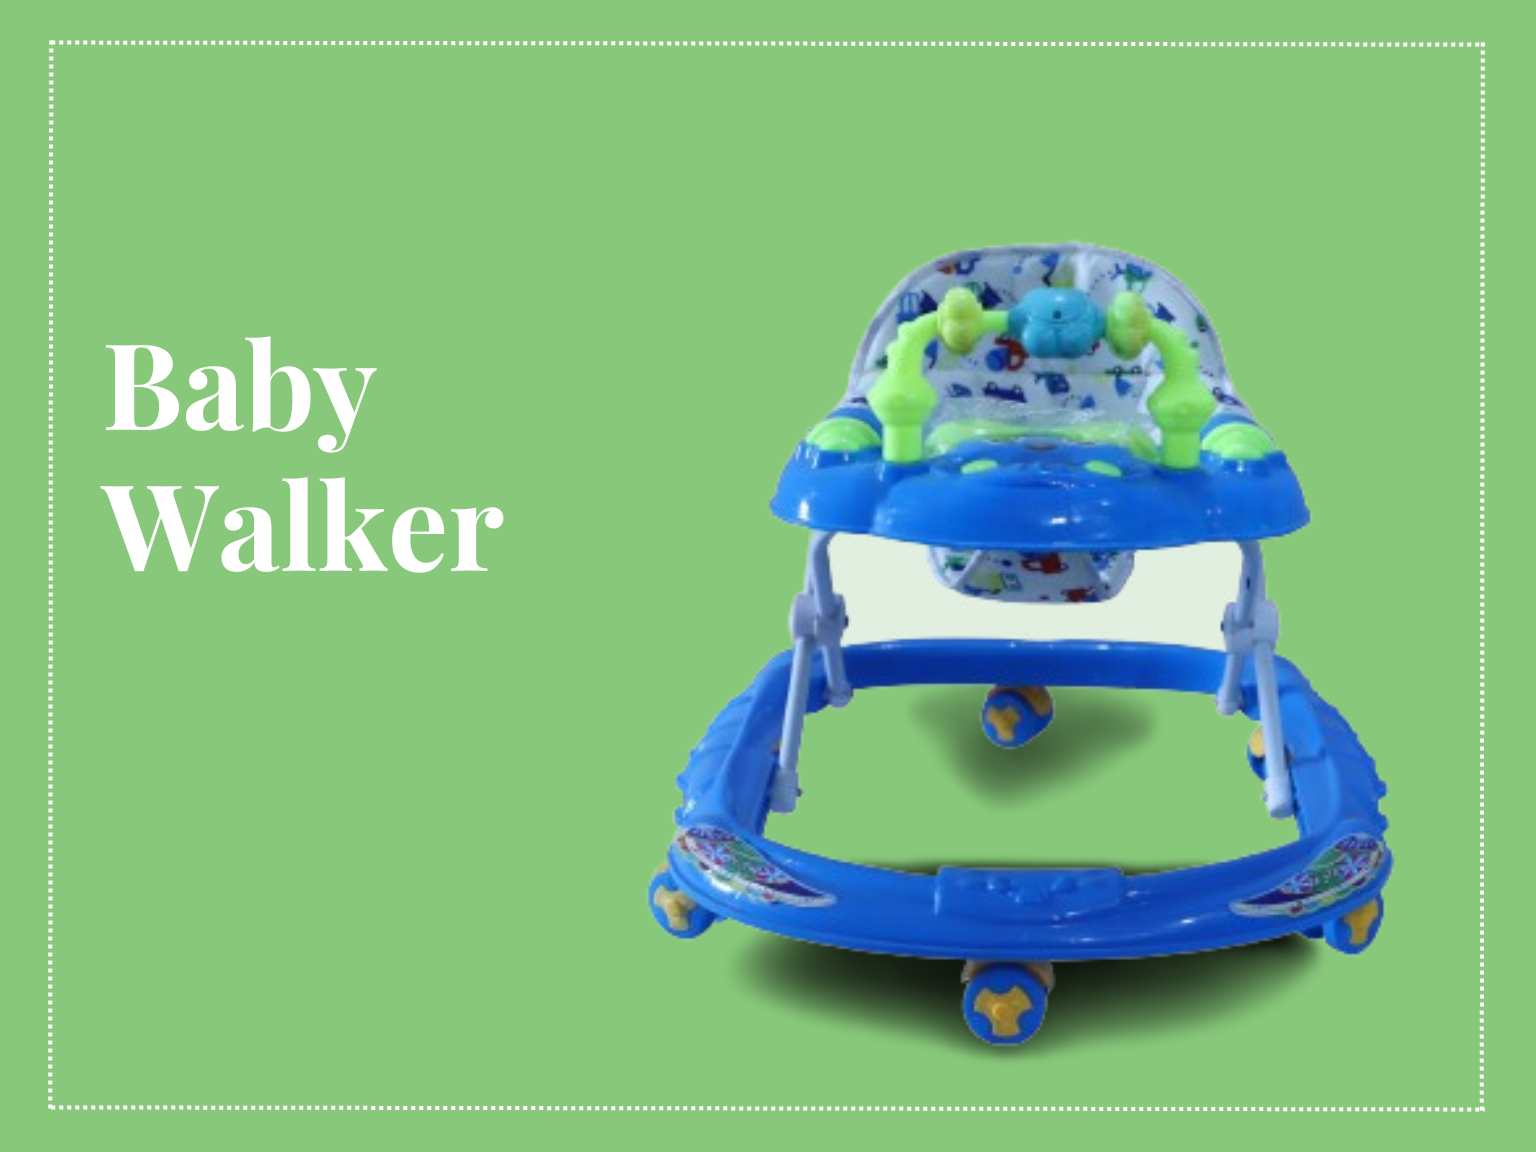 Baby Walker (1)